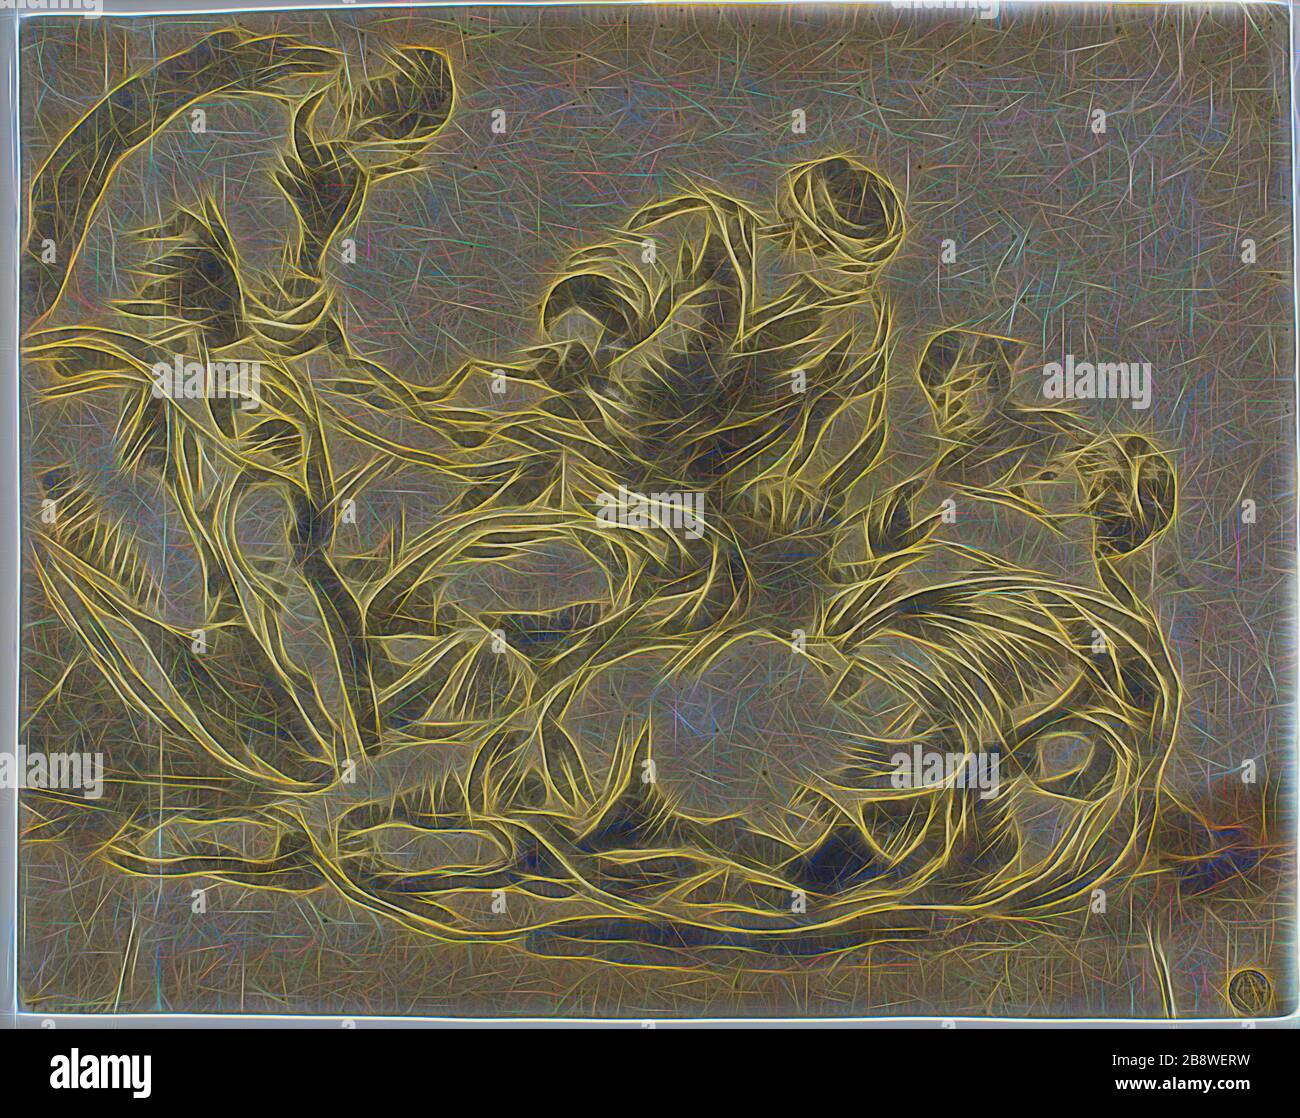 Miracle des pains et des poissons, c. 1602, attribué à Lucas Kilian (allemand, 1579-1637), après Jacopo Robusti, appelé Tintoretto (italien, 1519-1594), Italie, lavage au pinceau et au gris, sur papier gris brun foncé, 257 x 324 mm (max.), repensé par Gibon, design de brillant gai chaud de luminosité et de rayons de lumière. L'art classique réinventé avec une touche moderne. La photographie inspirée du futurisme, qui embrasse l'énergie dynamique de la technologie moderne, du mouvement, de la vitesse et révolutionne la culture. Banque D'Images